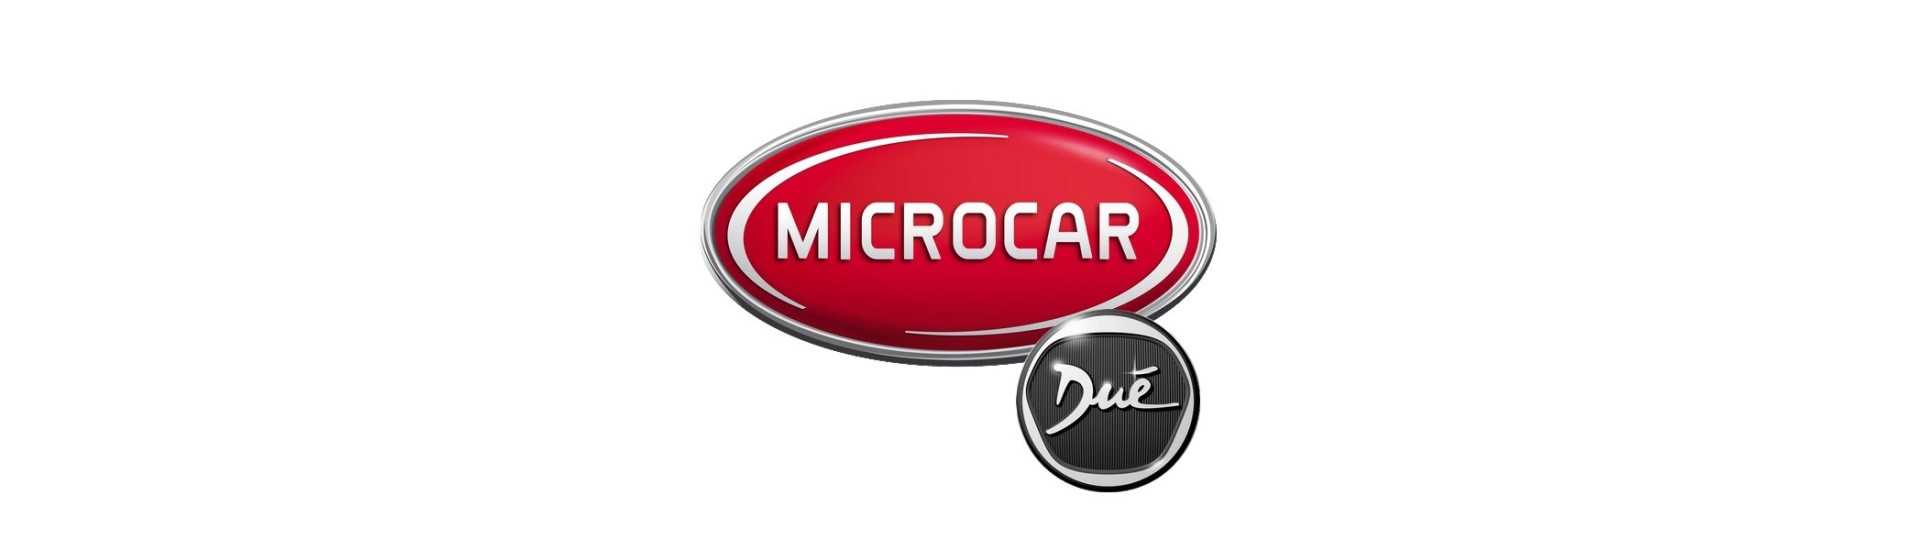 Metallituki auton parhaaseen hintaan ilman lupaa Microcar Dué